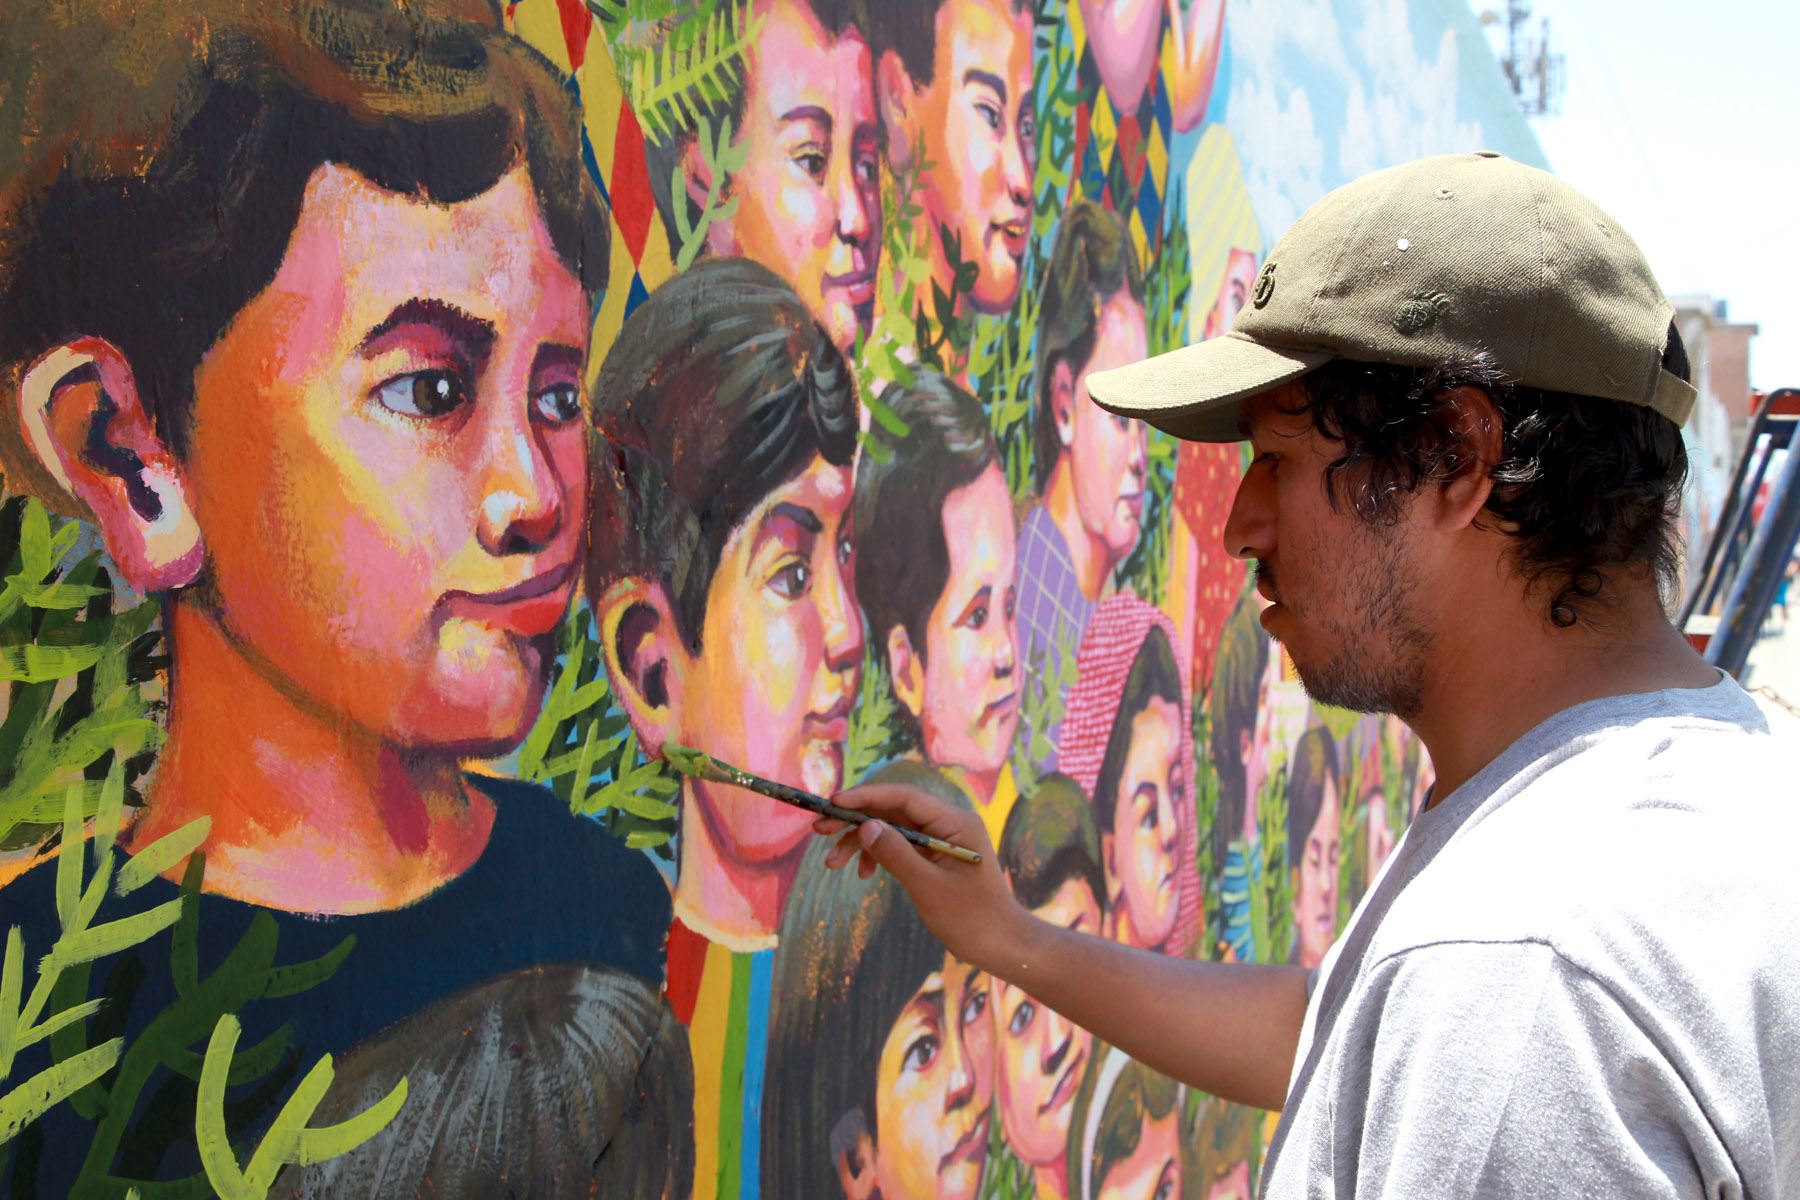 LIMA,PERU-ENERO 16. Un artista egresado de la Escuela de Bellas Artes pinta una escena alusiva a la zona de la selva peruana que visitará el Papa Francisco. Foto: ANDINA/Dante Zegarra.